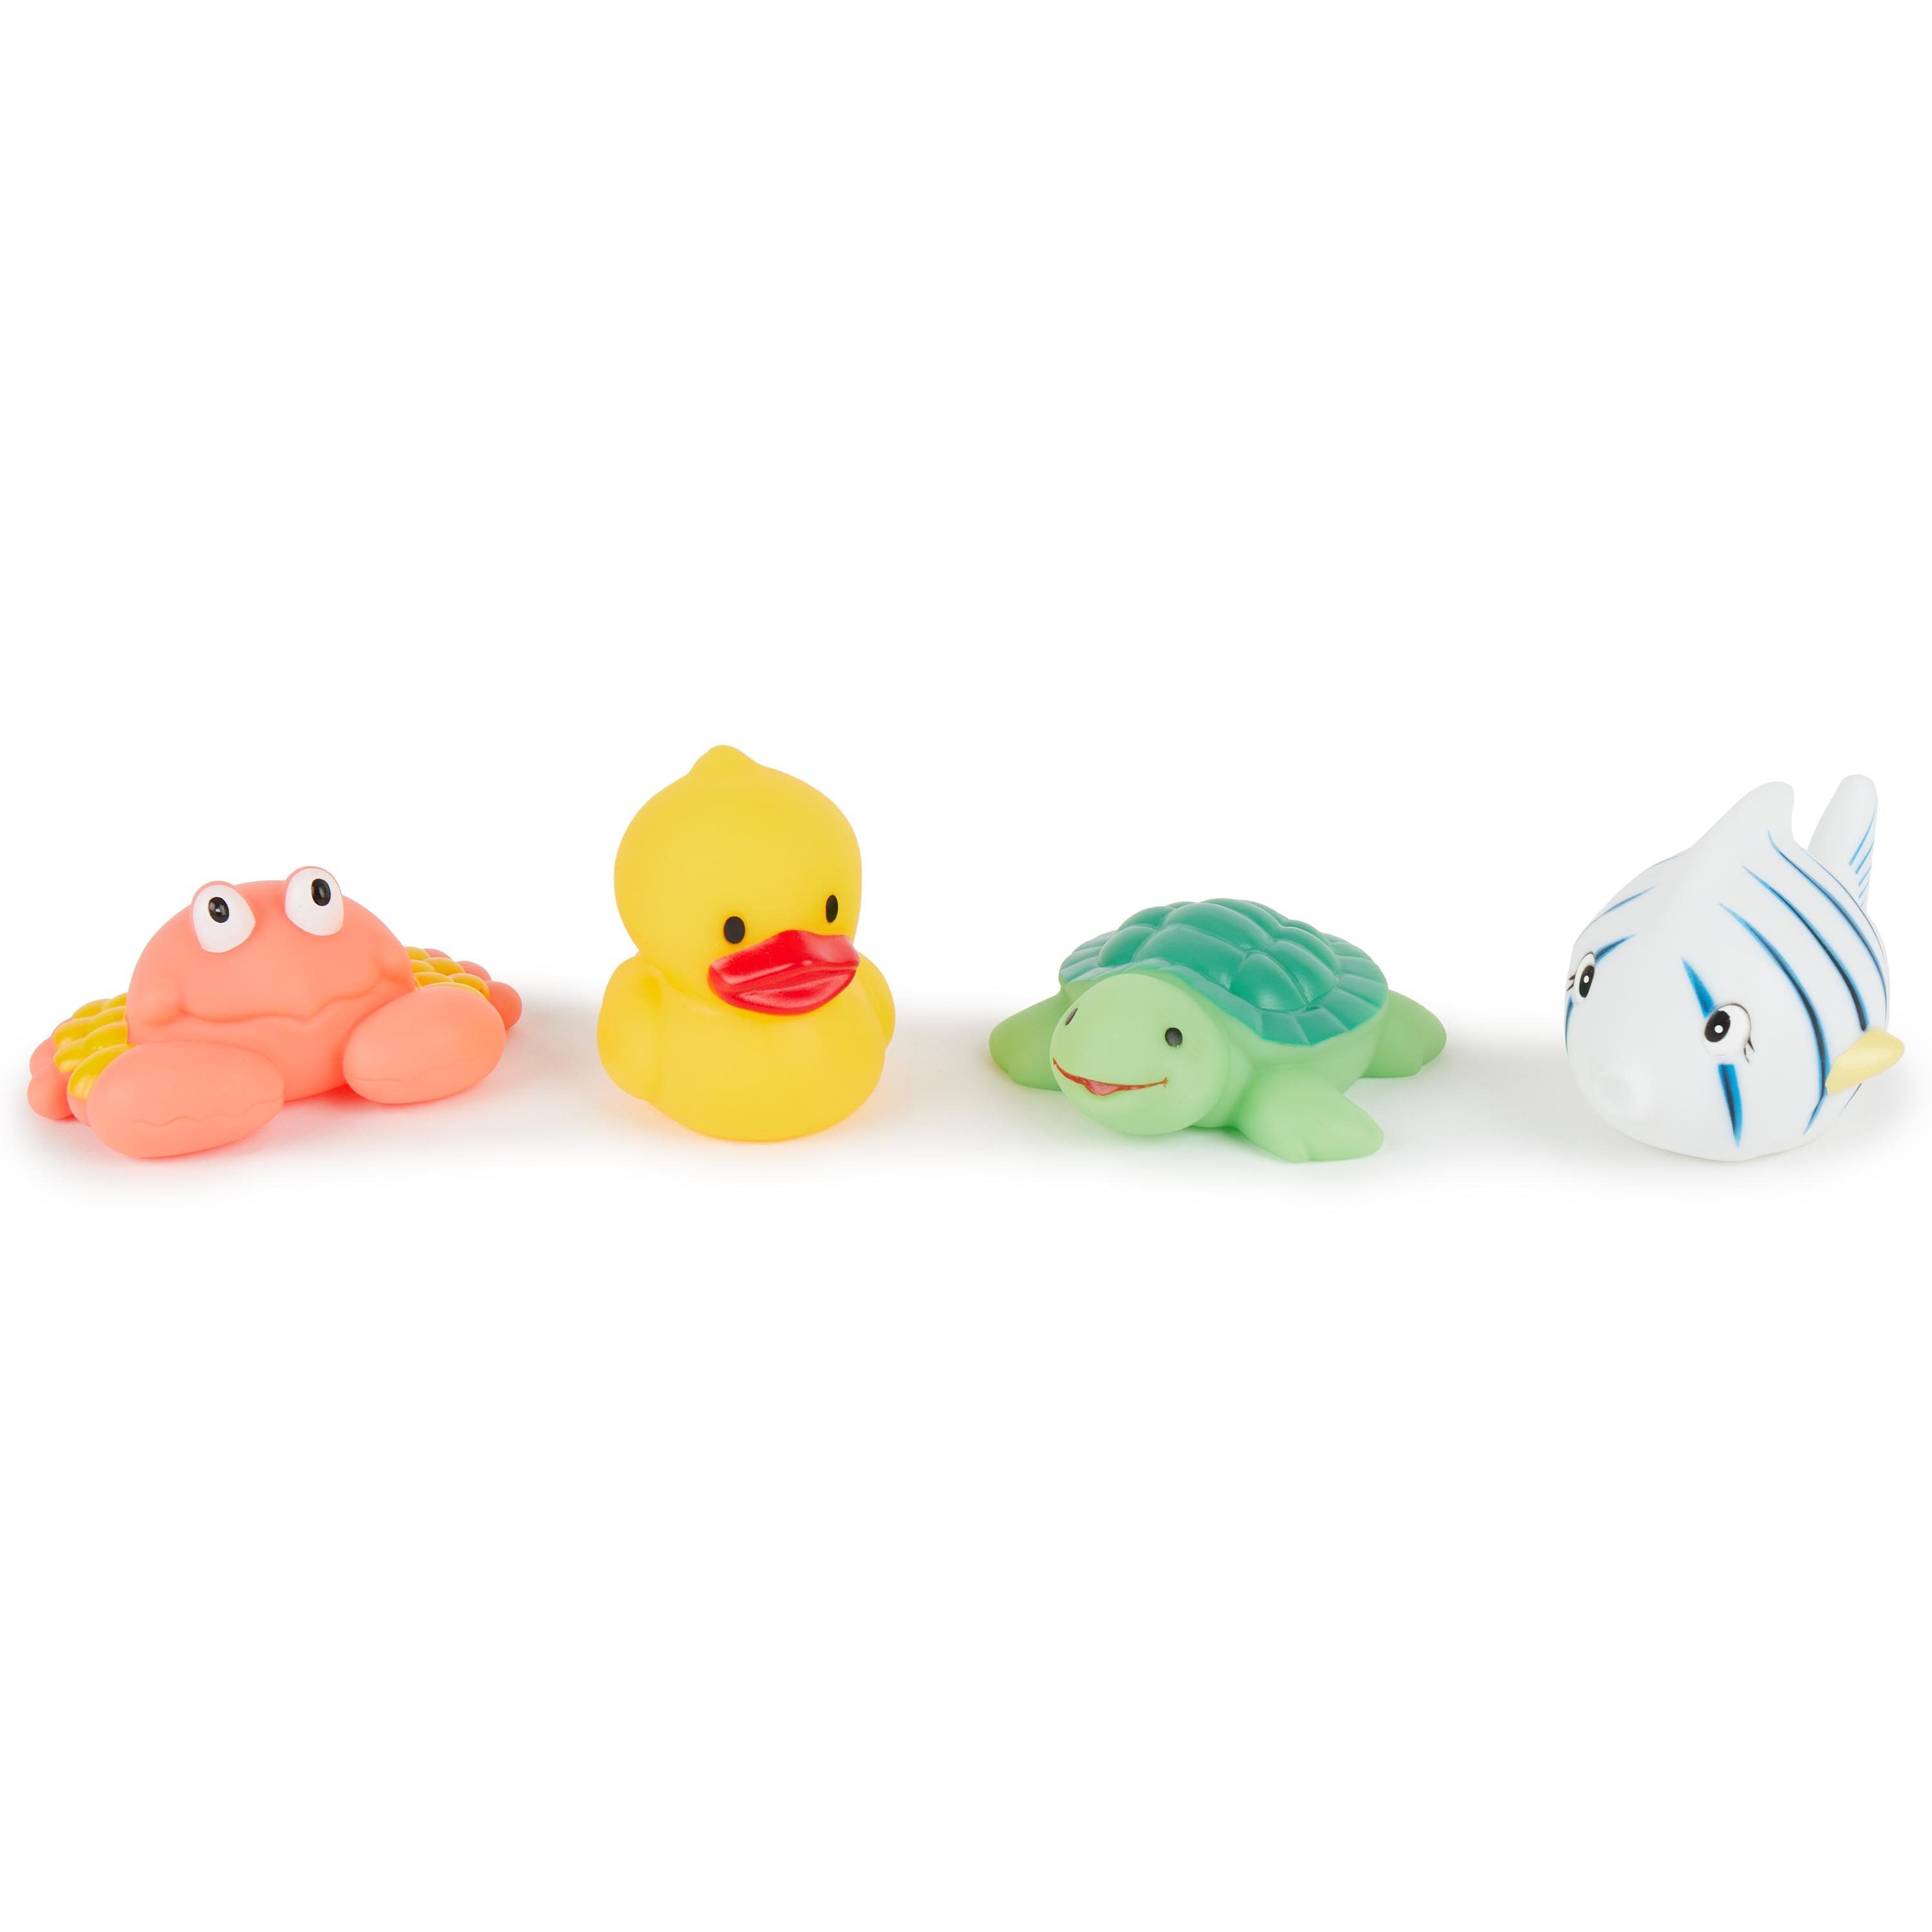 Badespielzeug 5 Niedlichen Tier Baden-Spielzeug für Babys Kinderbadespaß 